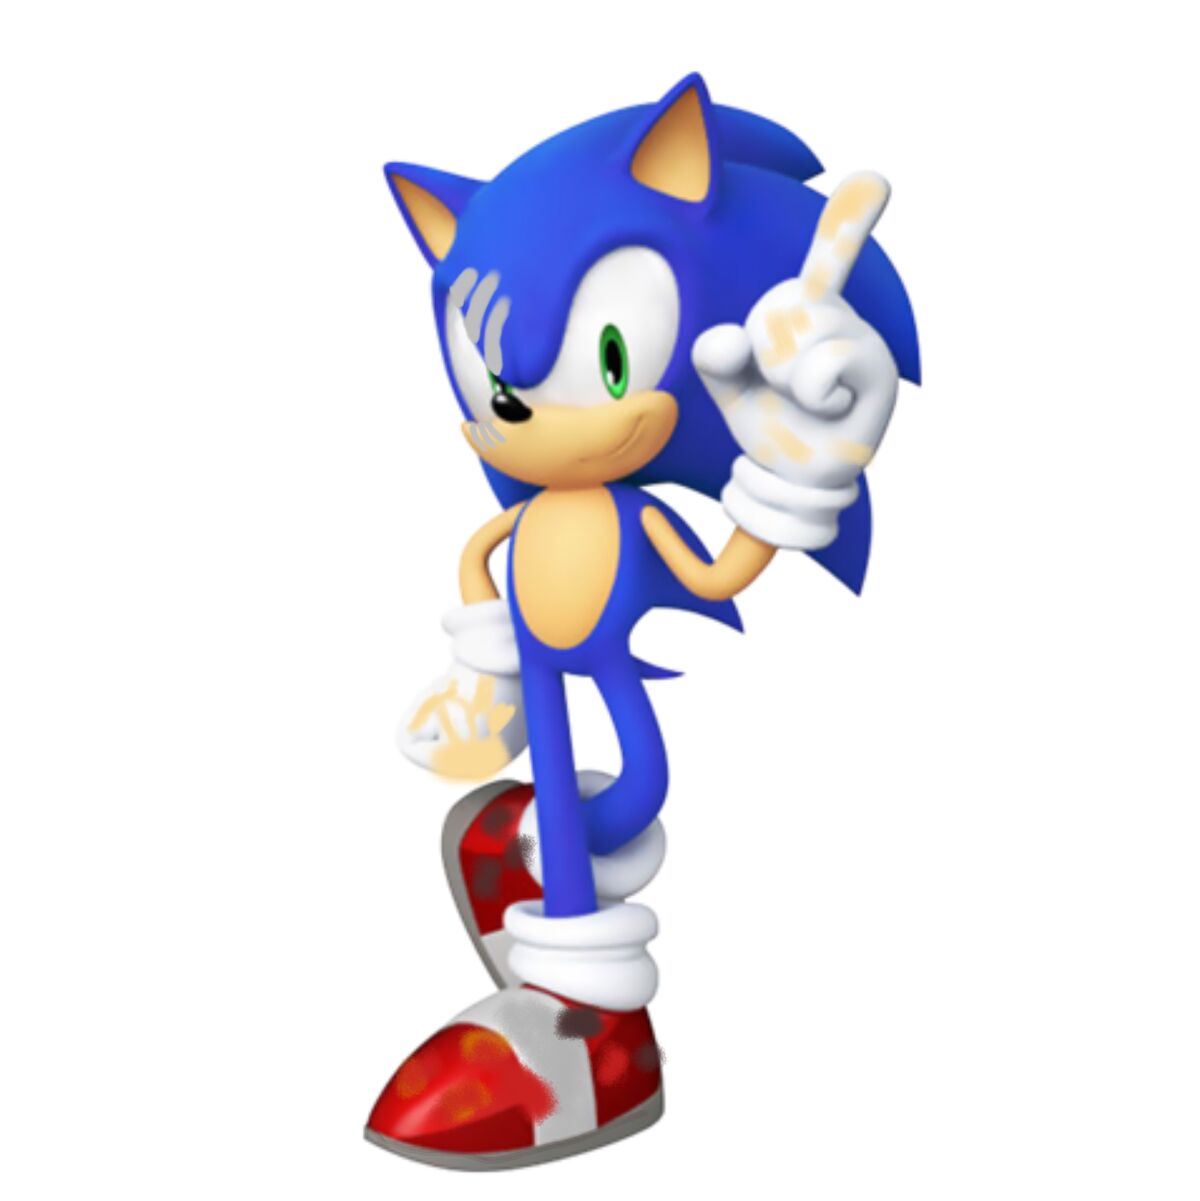 Nova go sonic. Classic Sonic Generations. Соник и классический Соник. Sonic Generations Classic Sonic. Соник Классик и Модерн.